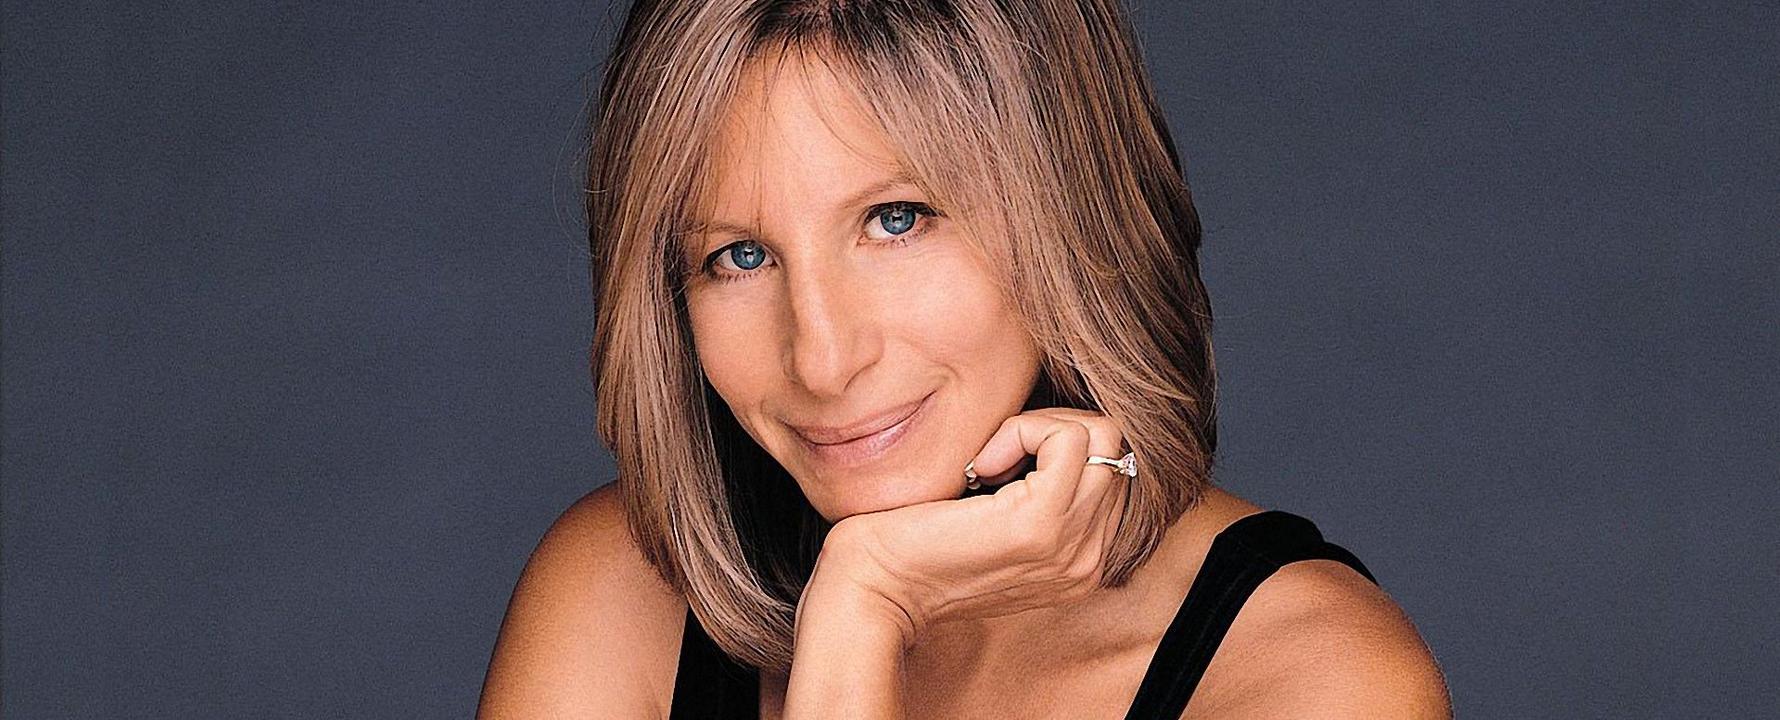 Fotografia promocional de Barbra Streisand.